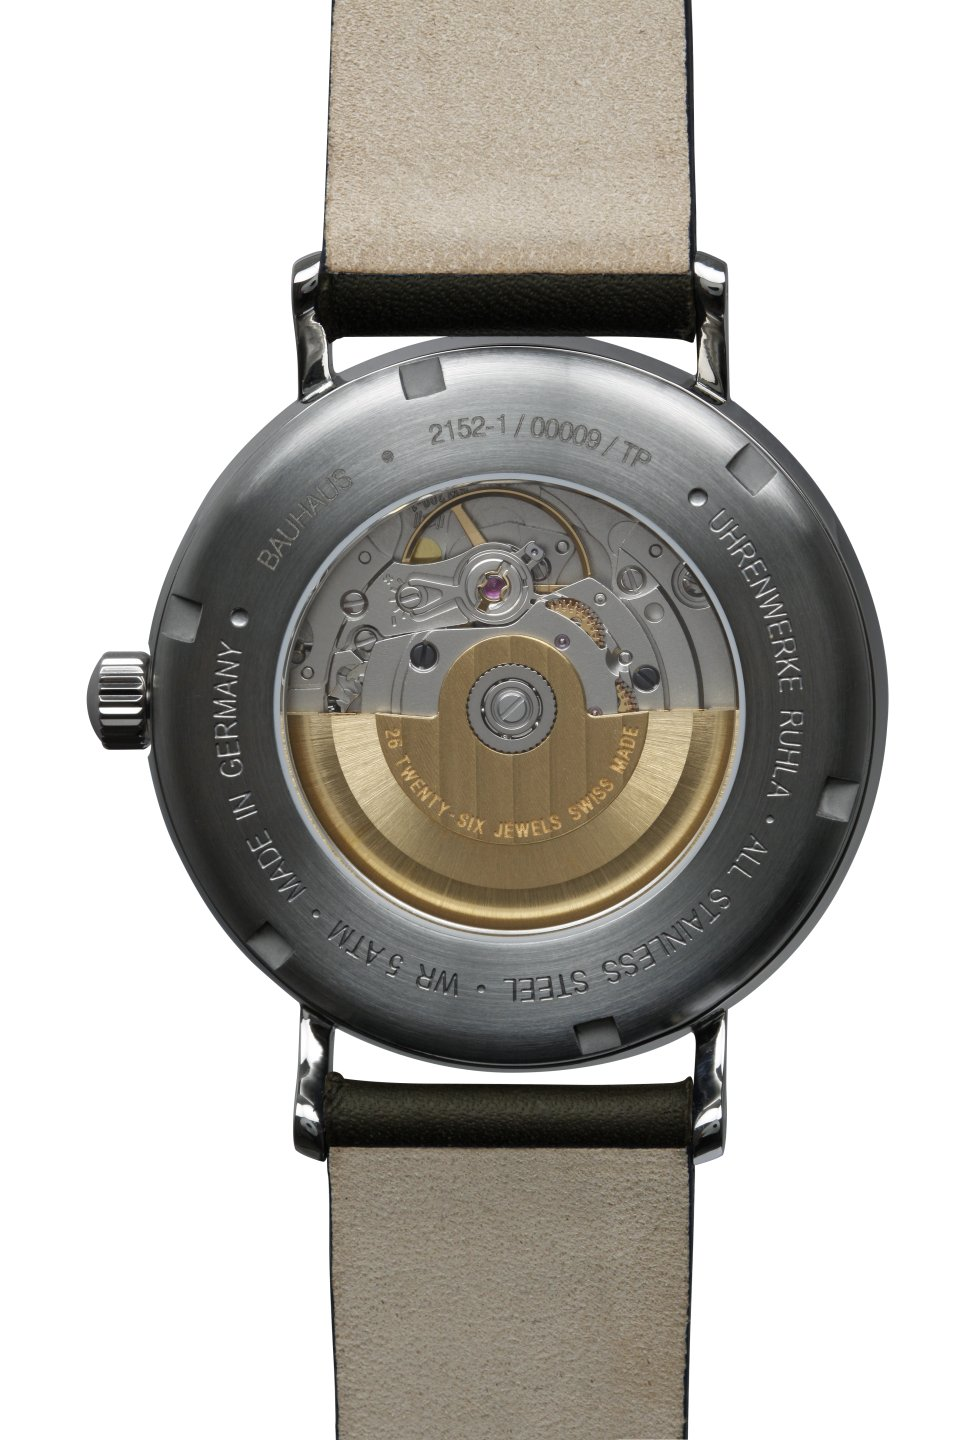 · - WEISS Juwelen Optik · Uhren Bauhaus-Automatikuhr-2152-1